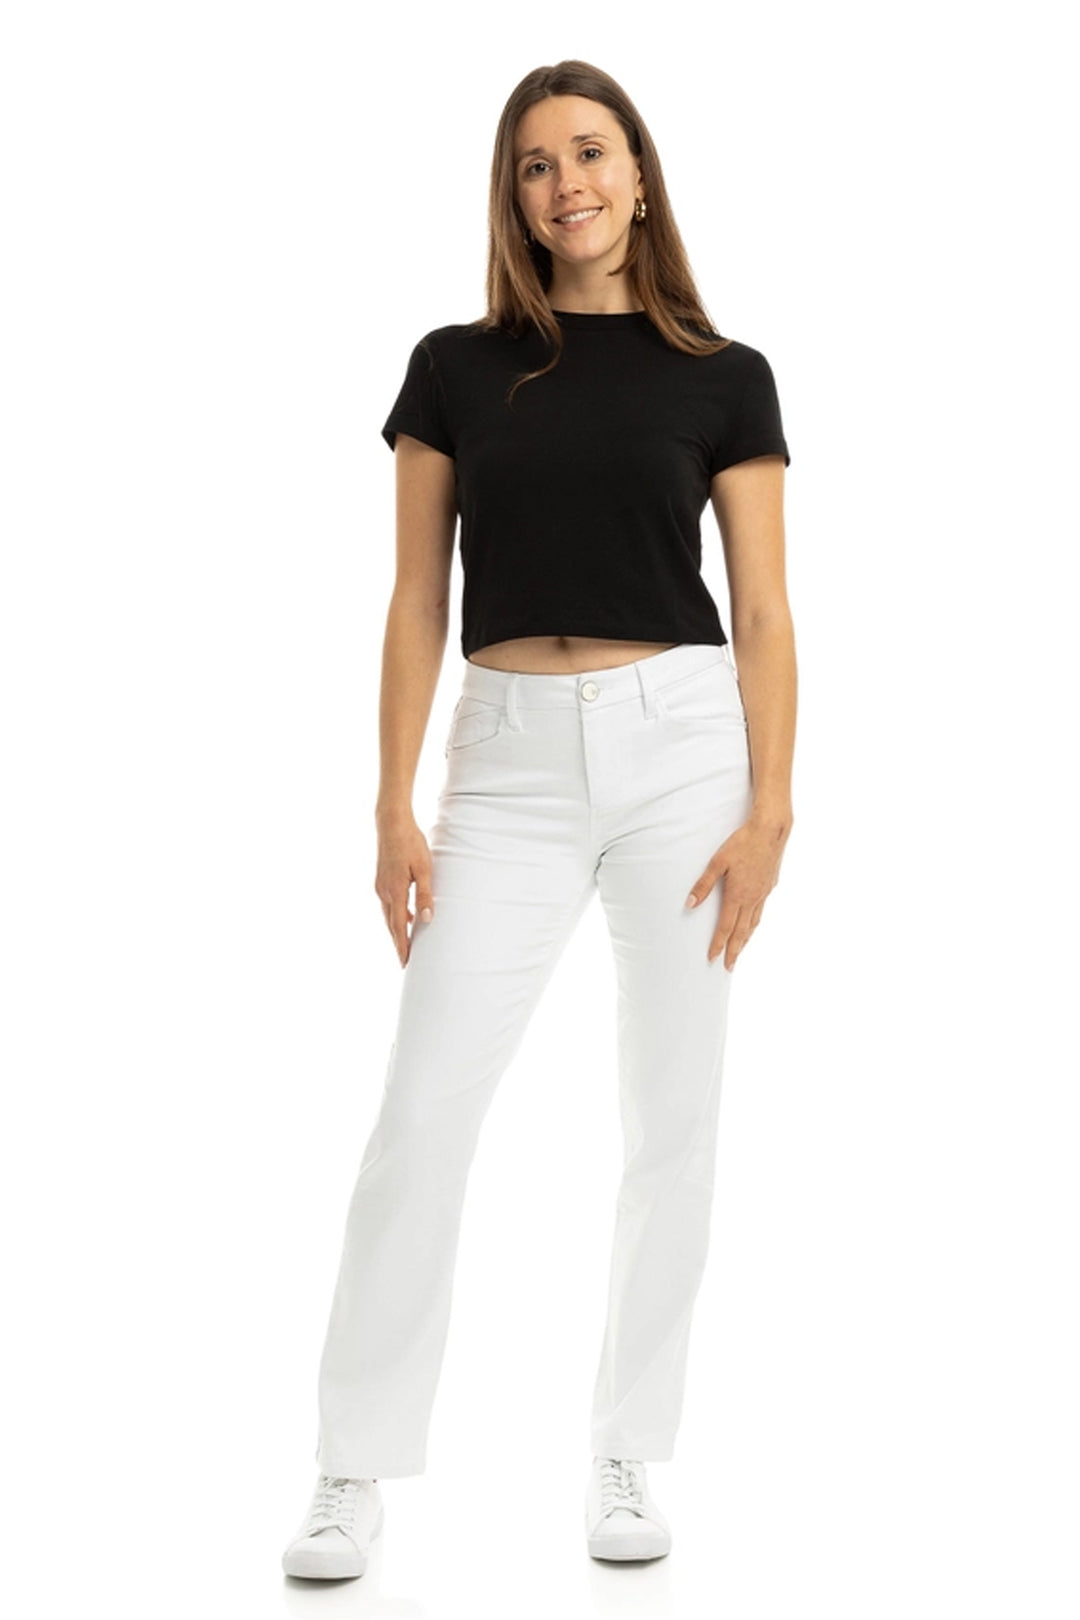 Jeans pour femme Yanique, Jambe Droite - Blanc